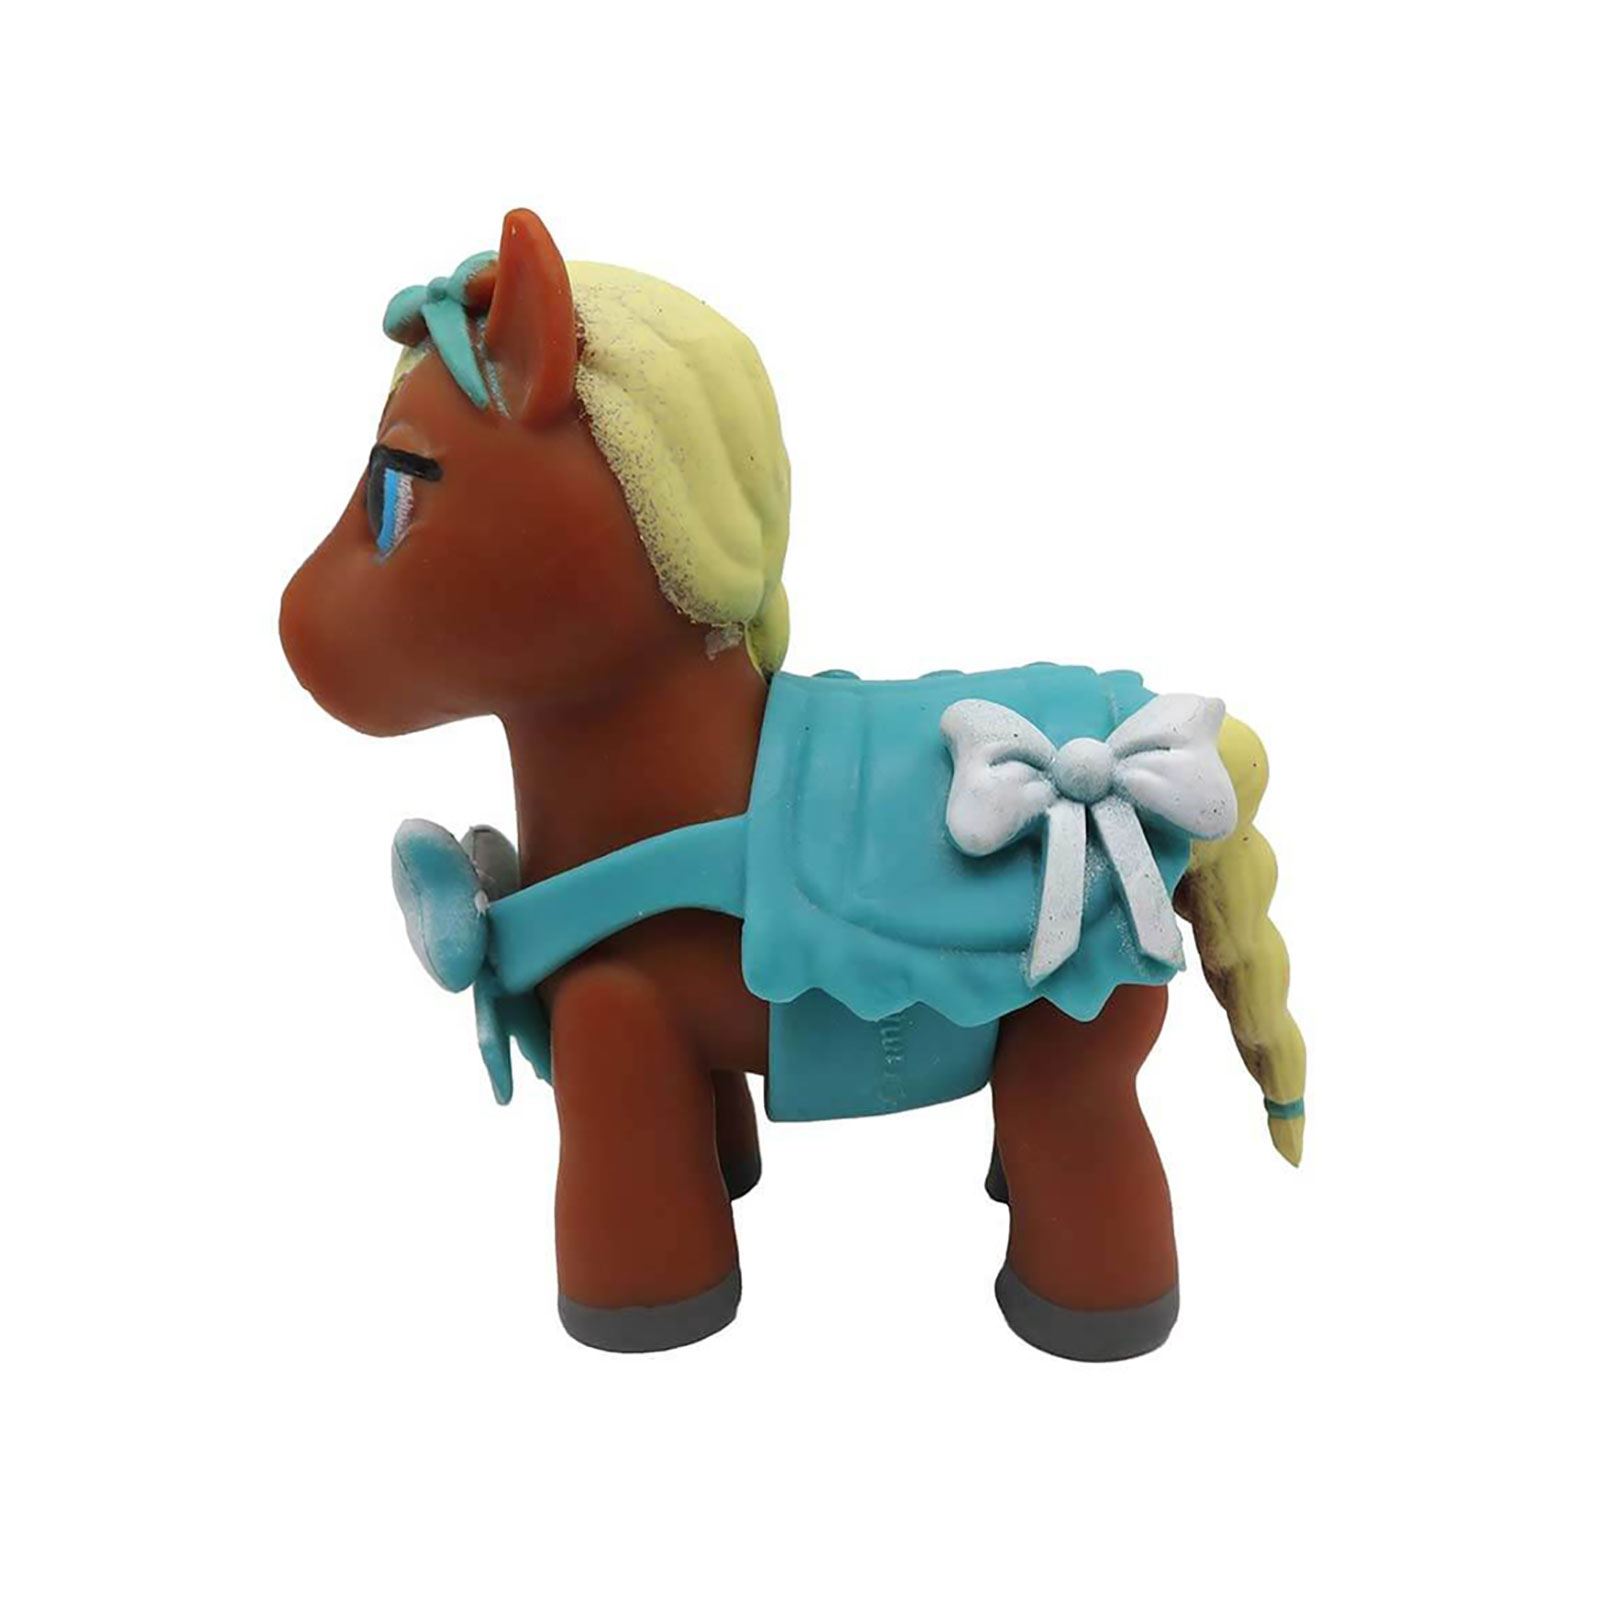 Sunman Oyuncak Diramix Dress Your Pony Kostümlü Figürler -  Baby Mint Yeşili